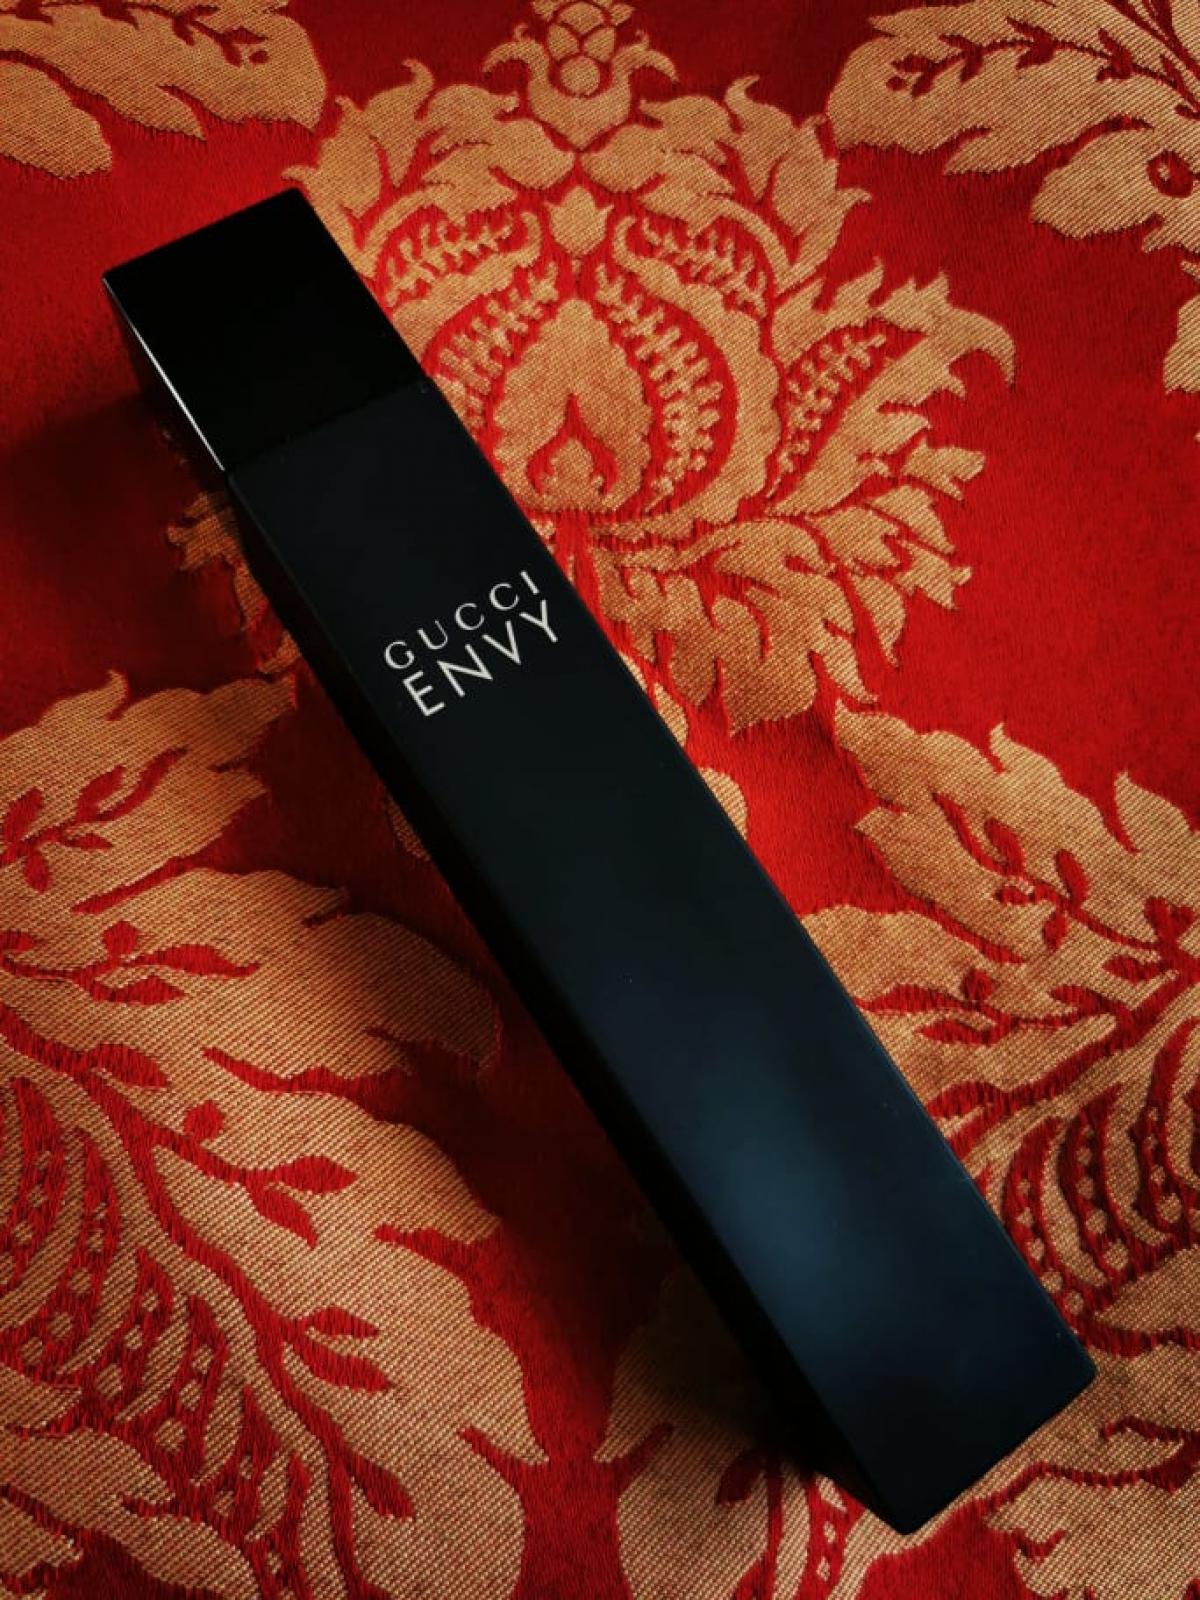 Gucci Envy Eau de Parfum Gucci parfem - parfem za žene 1997